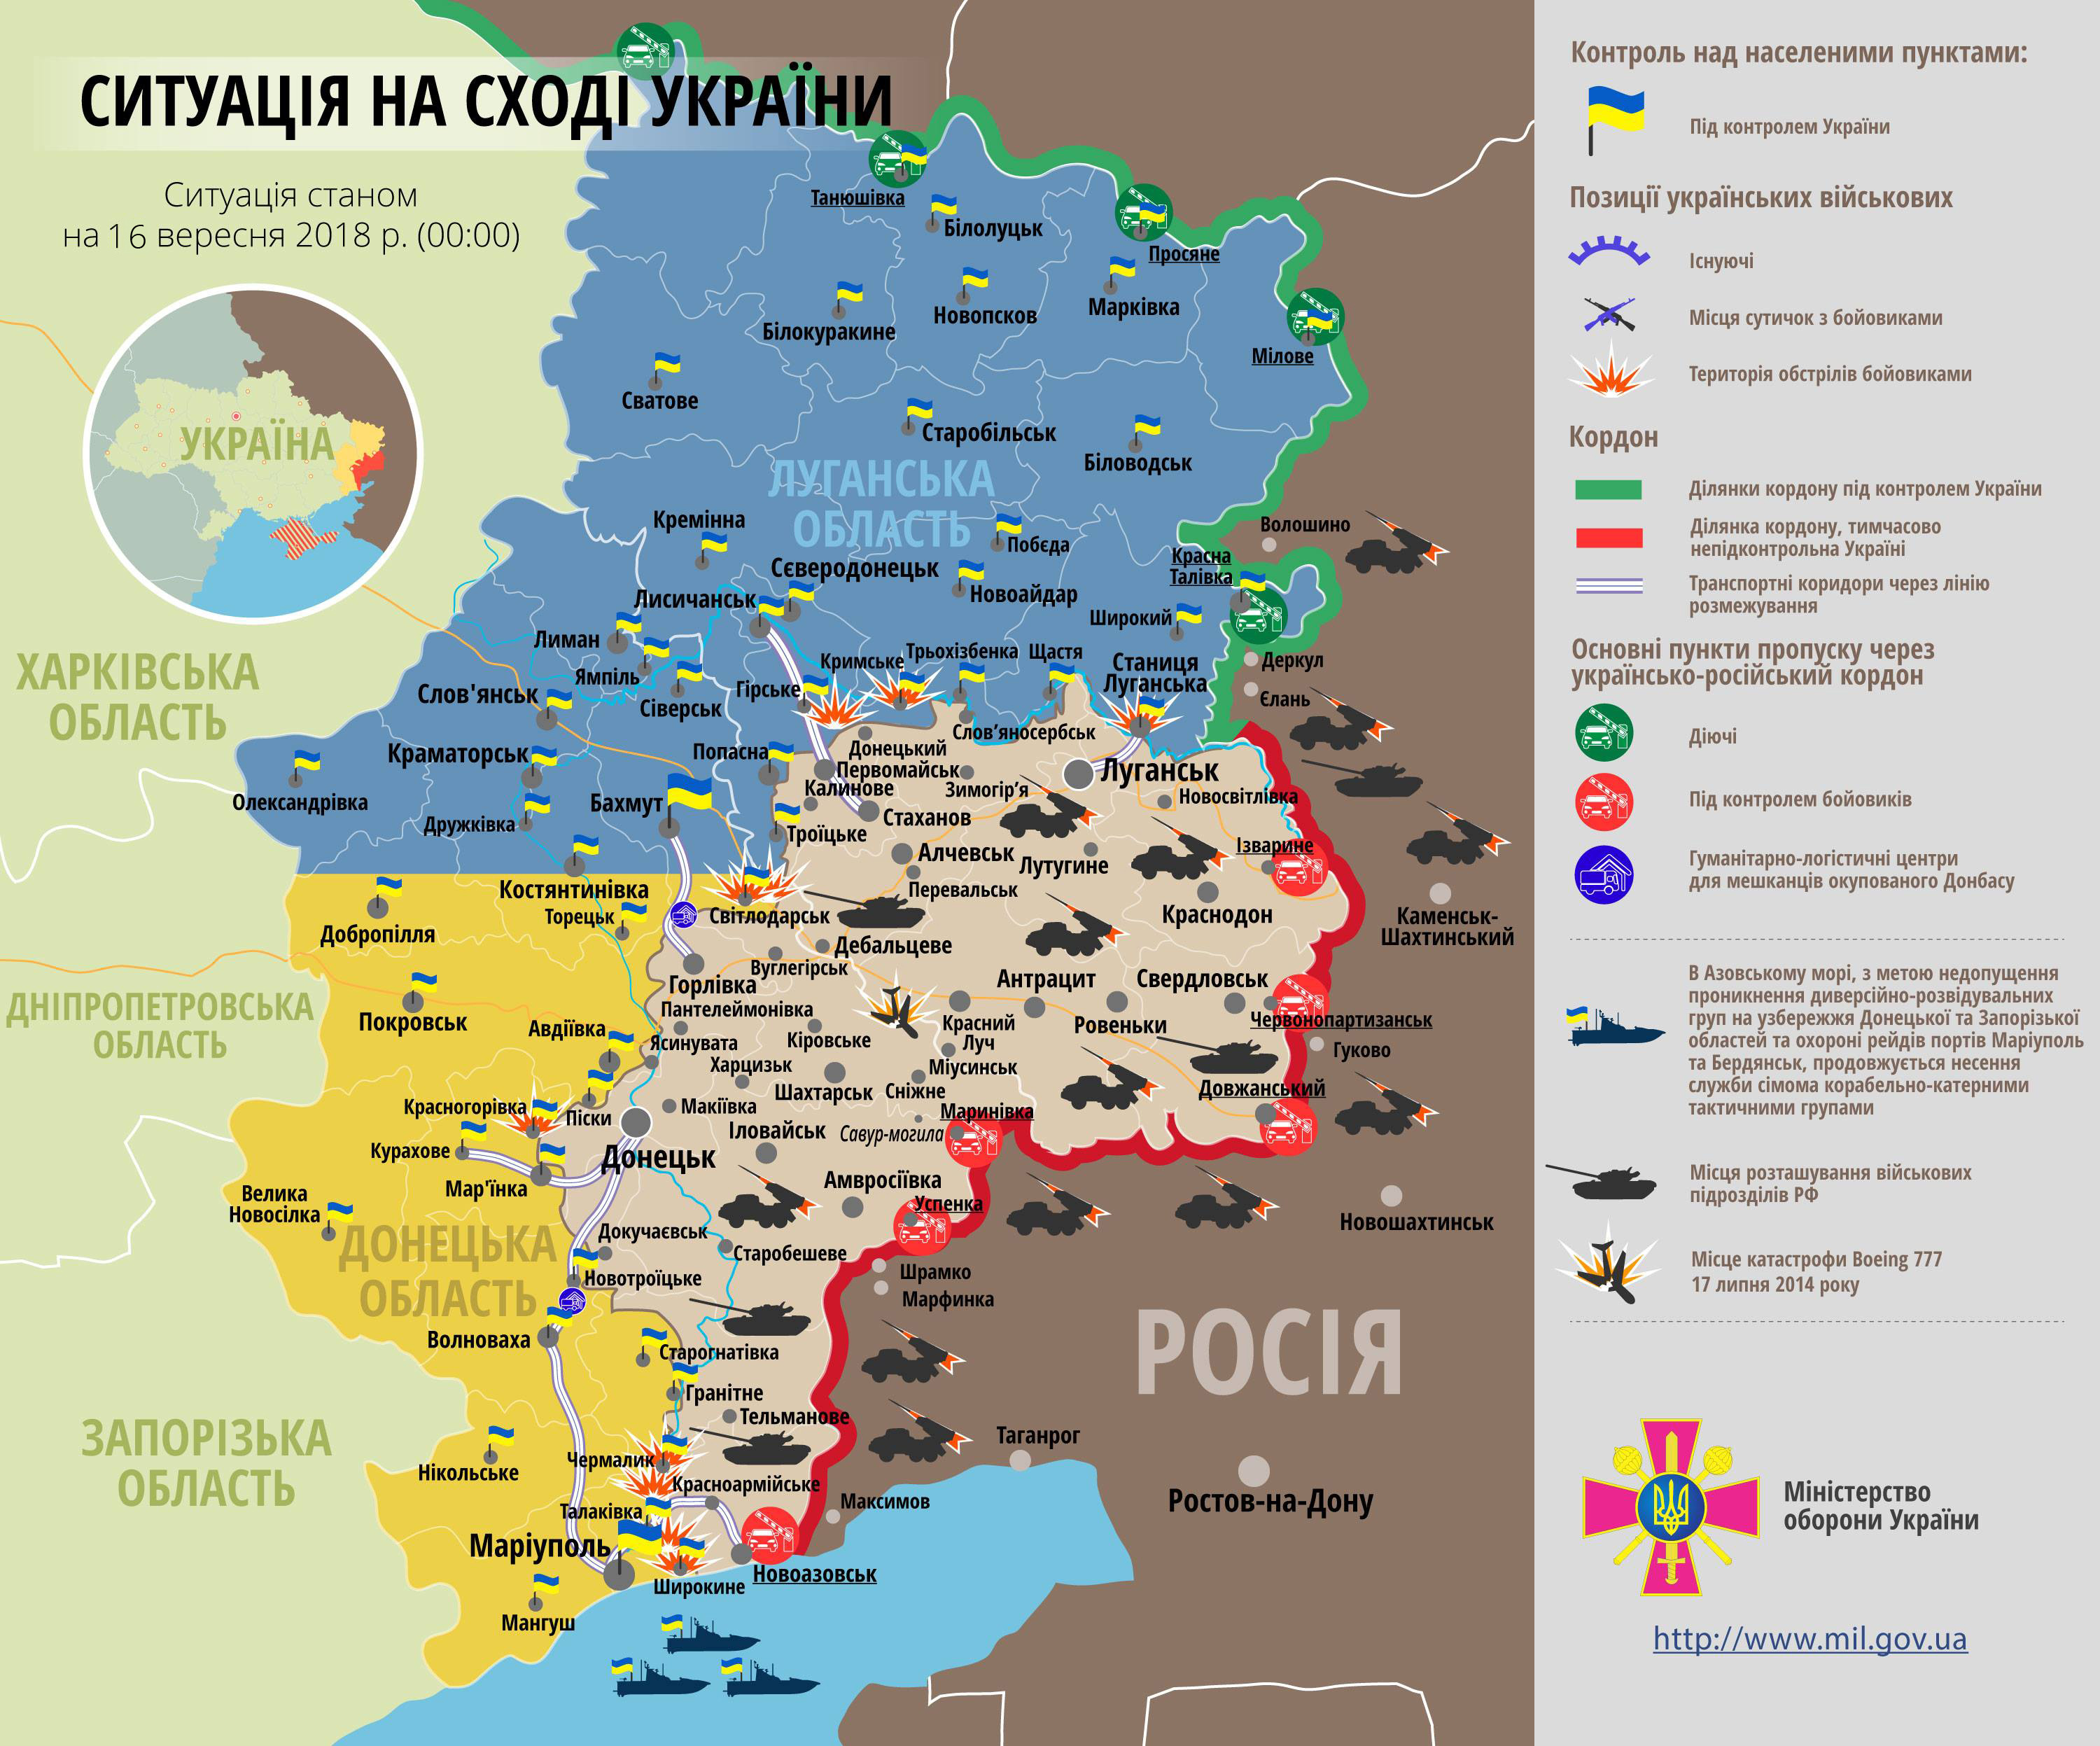 Потери российской армии на Донбассе значительно возросли: боевая сводка и карта ООС от 16 сентября - кадры